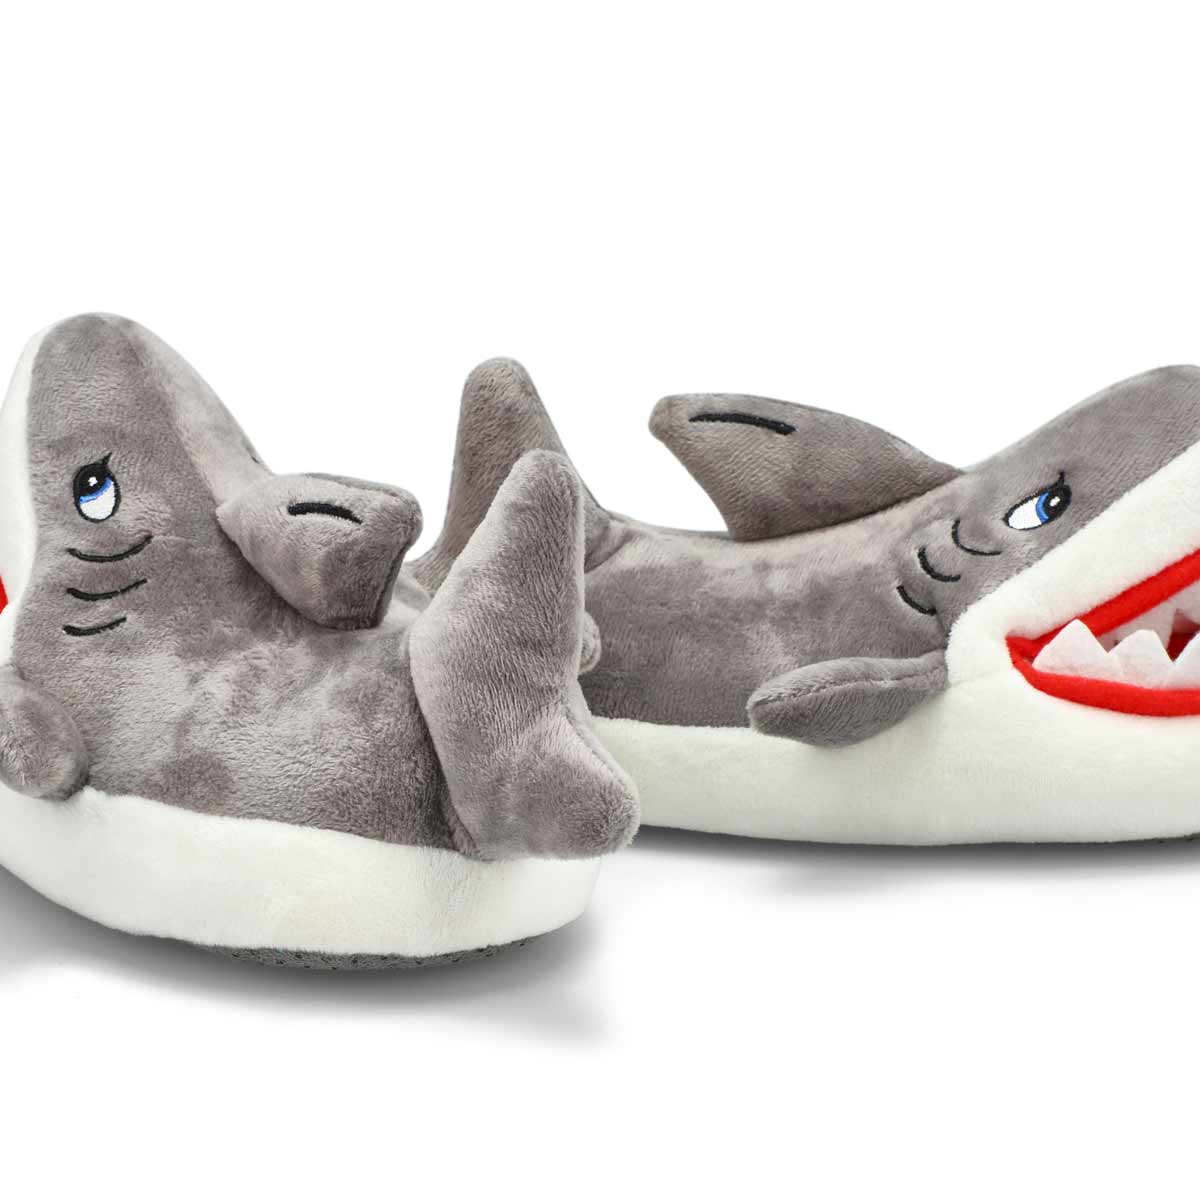 Kids' Shark Slipper - Grey /White